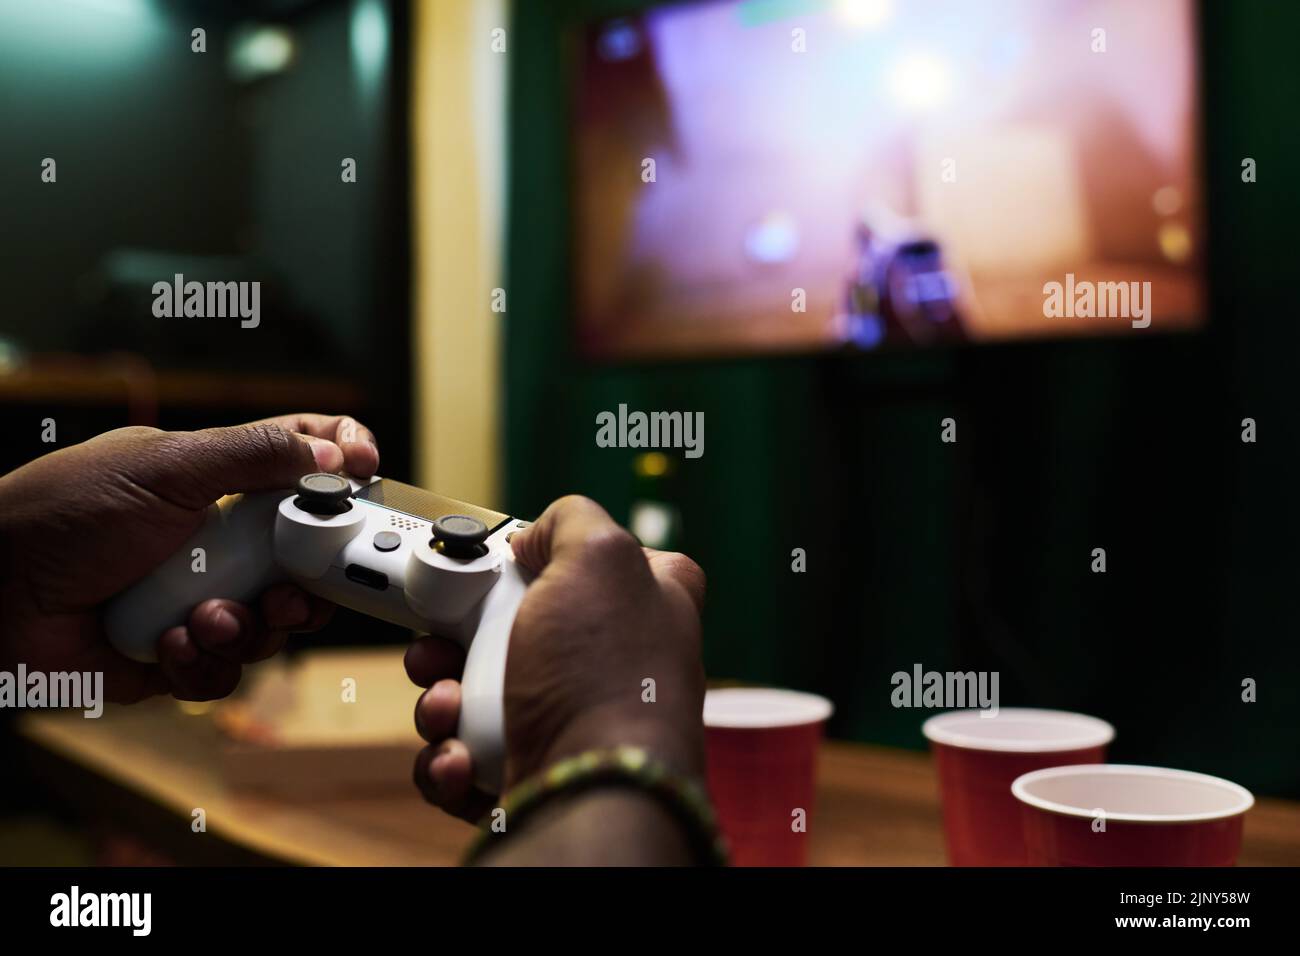 Manos del joven afroamericano pulsando los botones del mando mientras dirige el dispositivo en la pantalla del televisor durante el videojuego Foto de stock